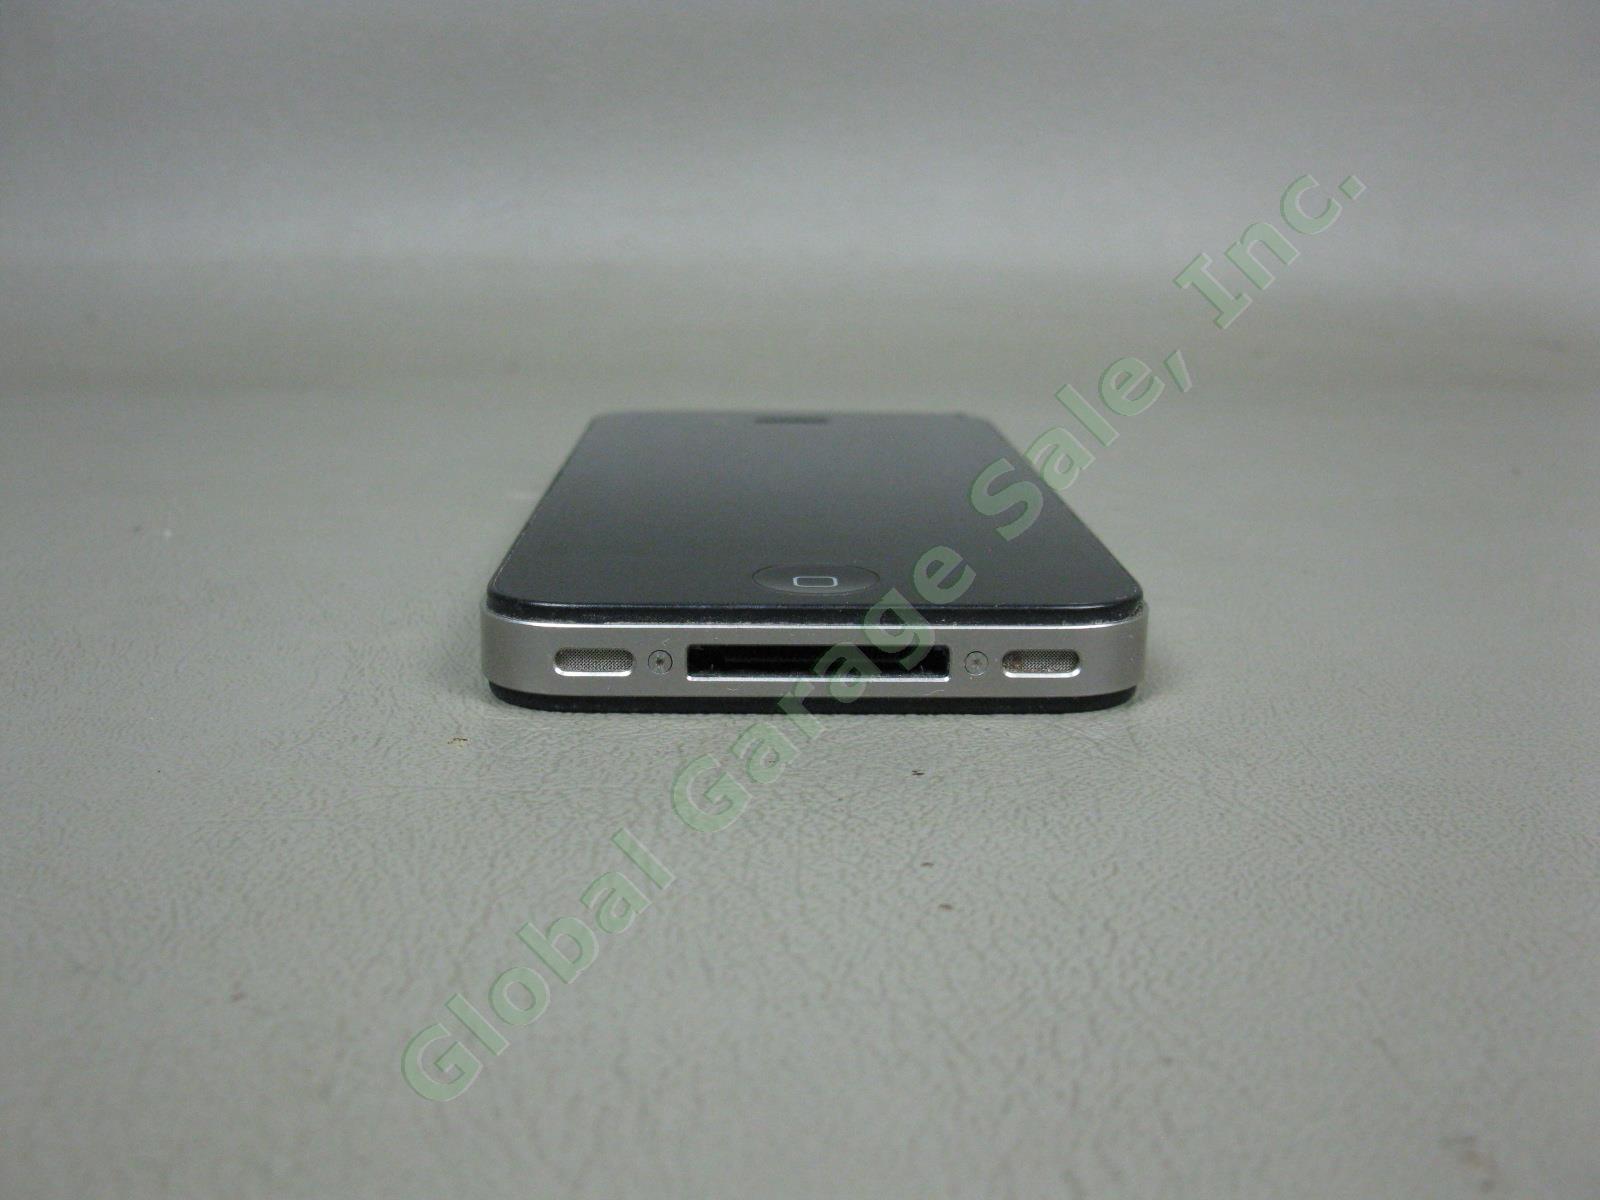 Apple iPhone 4s 16GB Black Model A1387 MD276LL/A Verizon Unlocked + Reset NO RES 3